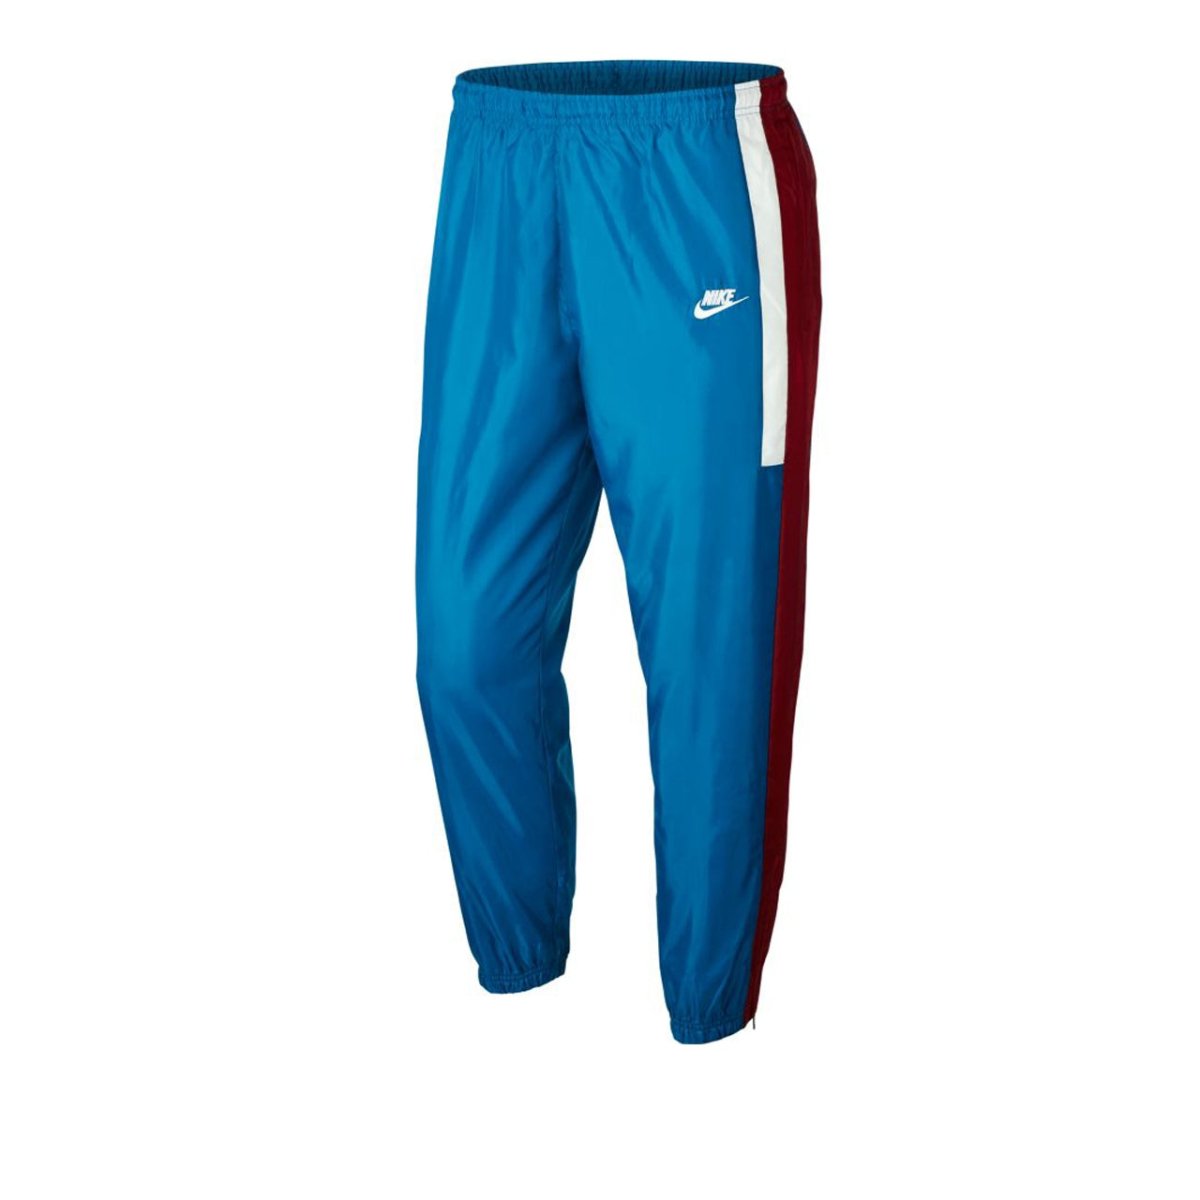 Nike NSW Re-Issue Pant (Blau)  - Allike Store